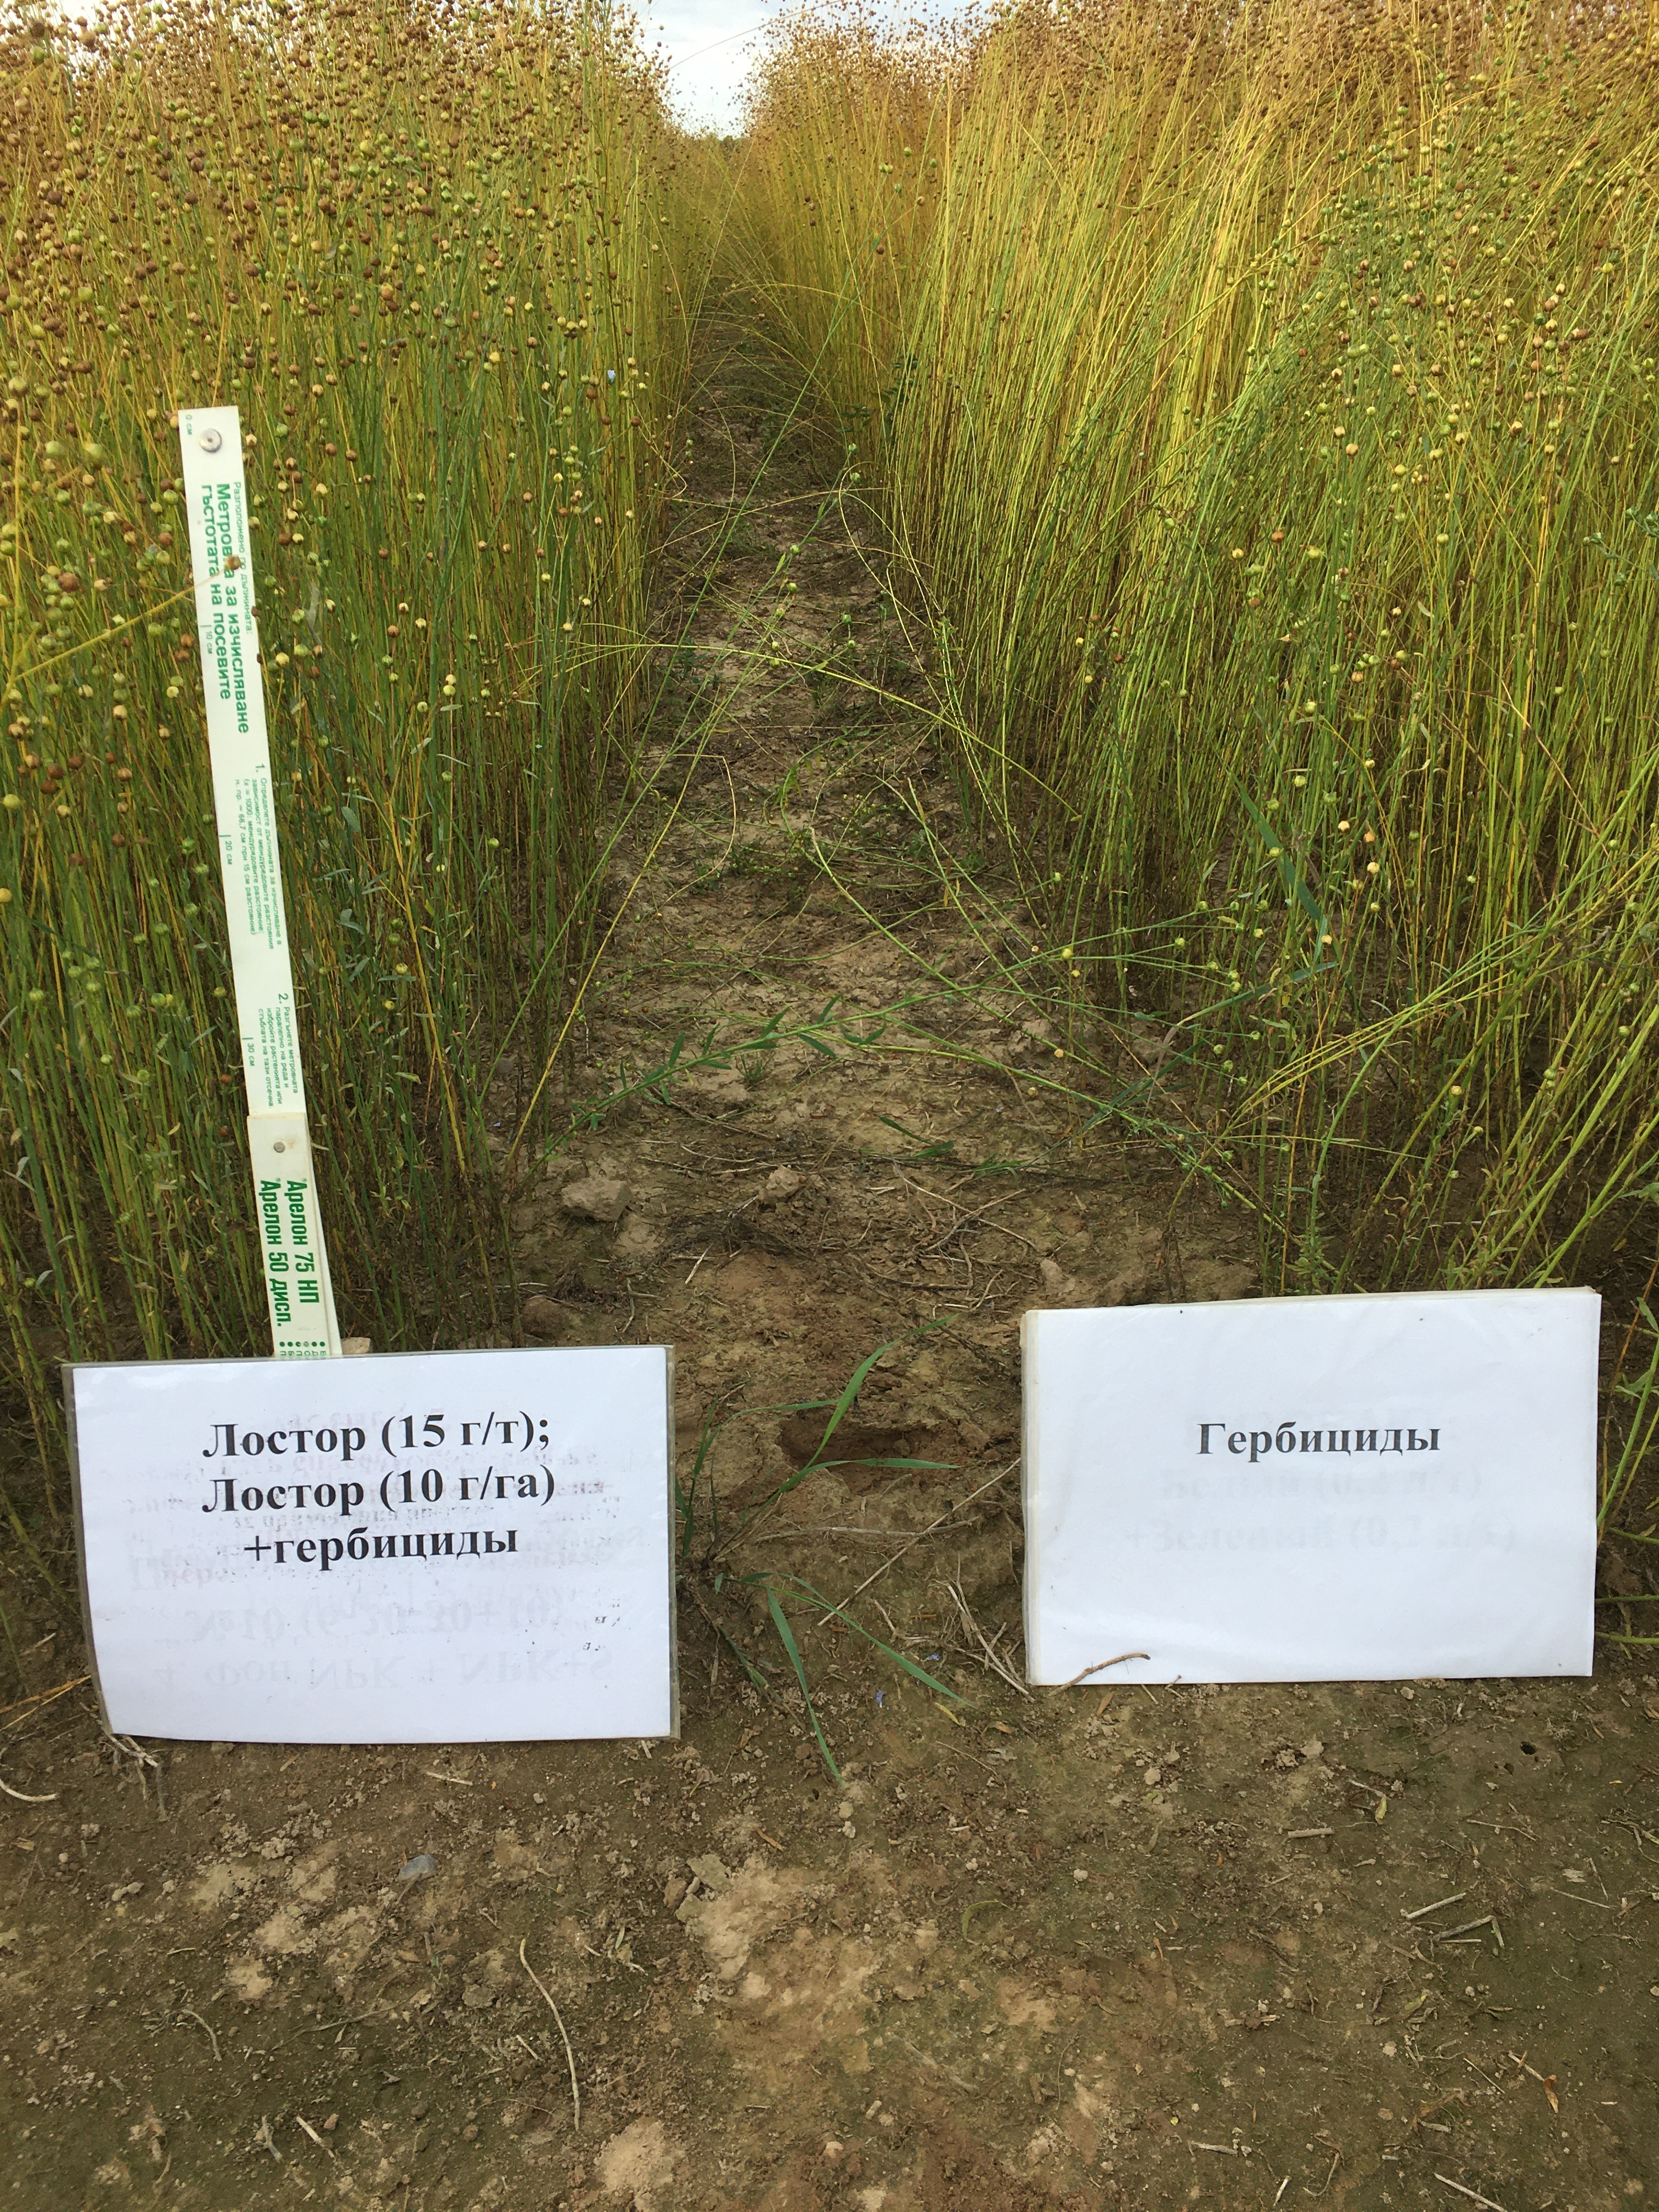 Визуальное сравнение растений льна-долгунца в фазе созревания в производственной обстановке: слева - делянка с обработкой семян и посевов Лостором; справа – стандарт